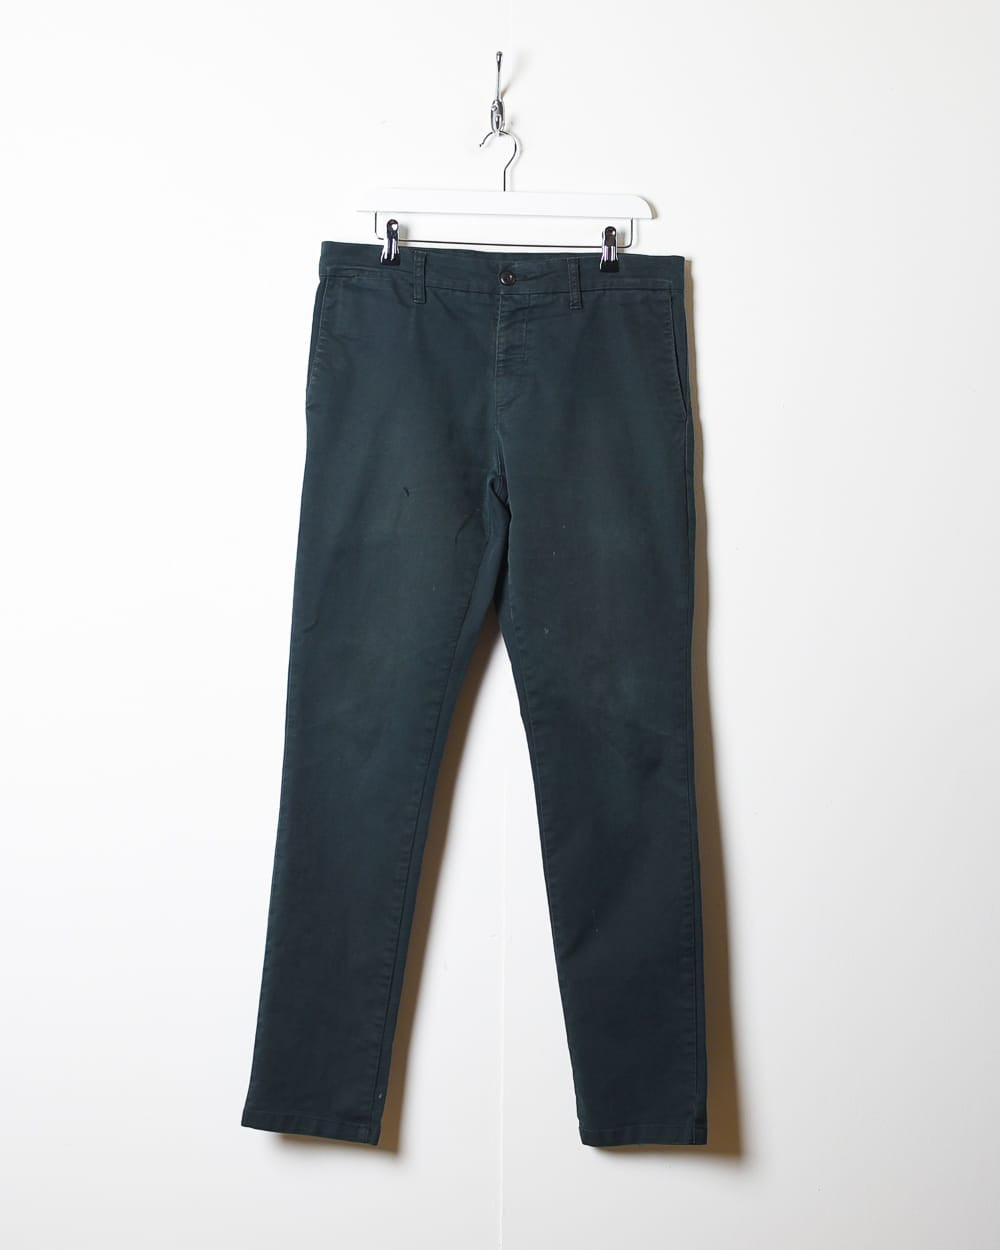 Black Carhartt Trousers - W35 L33